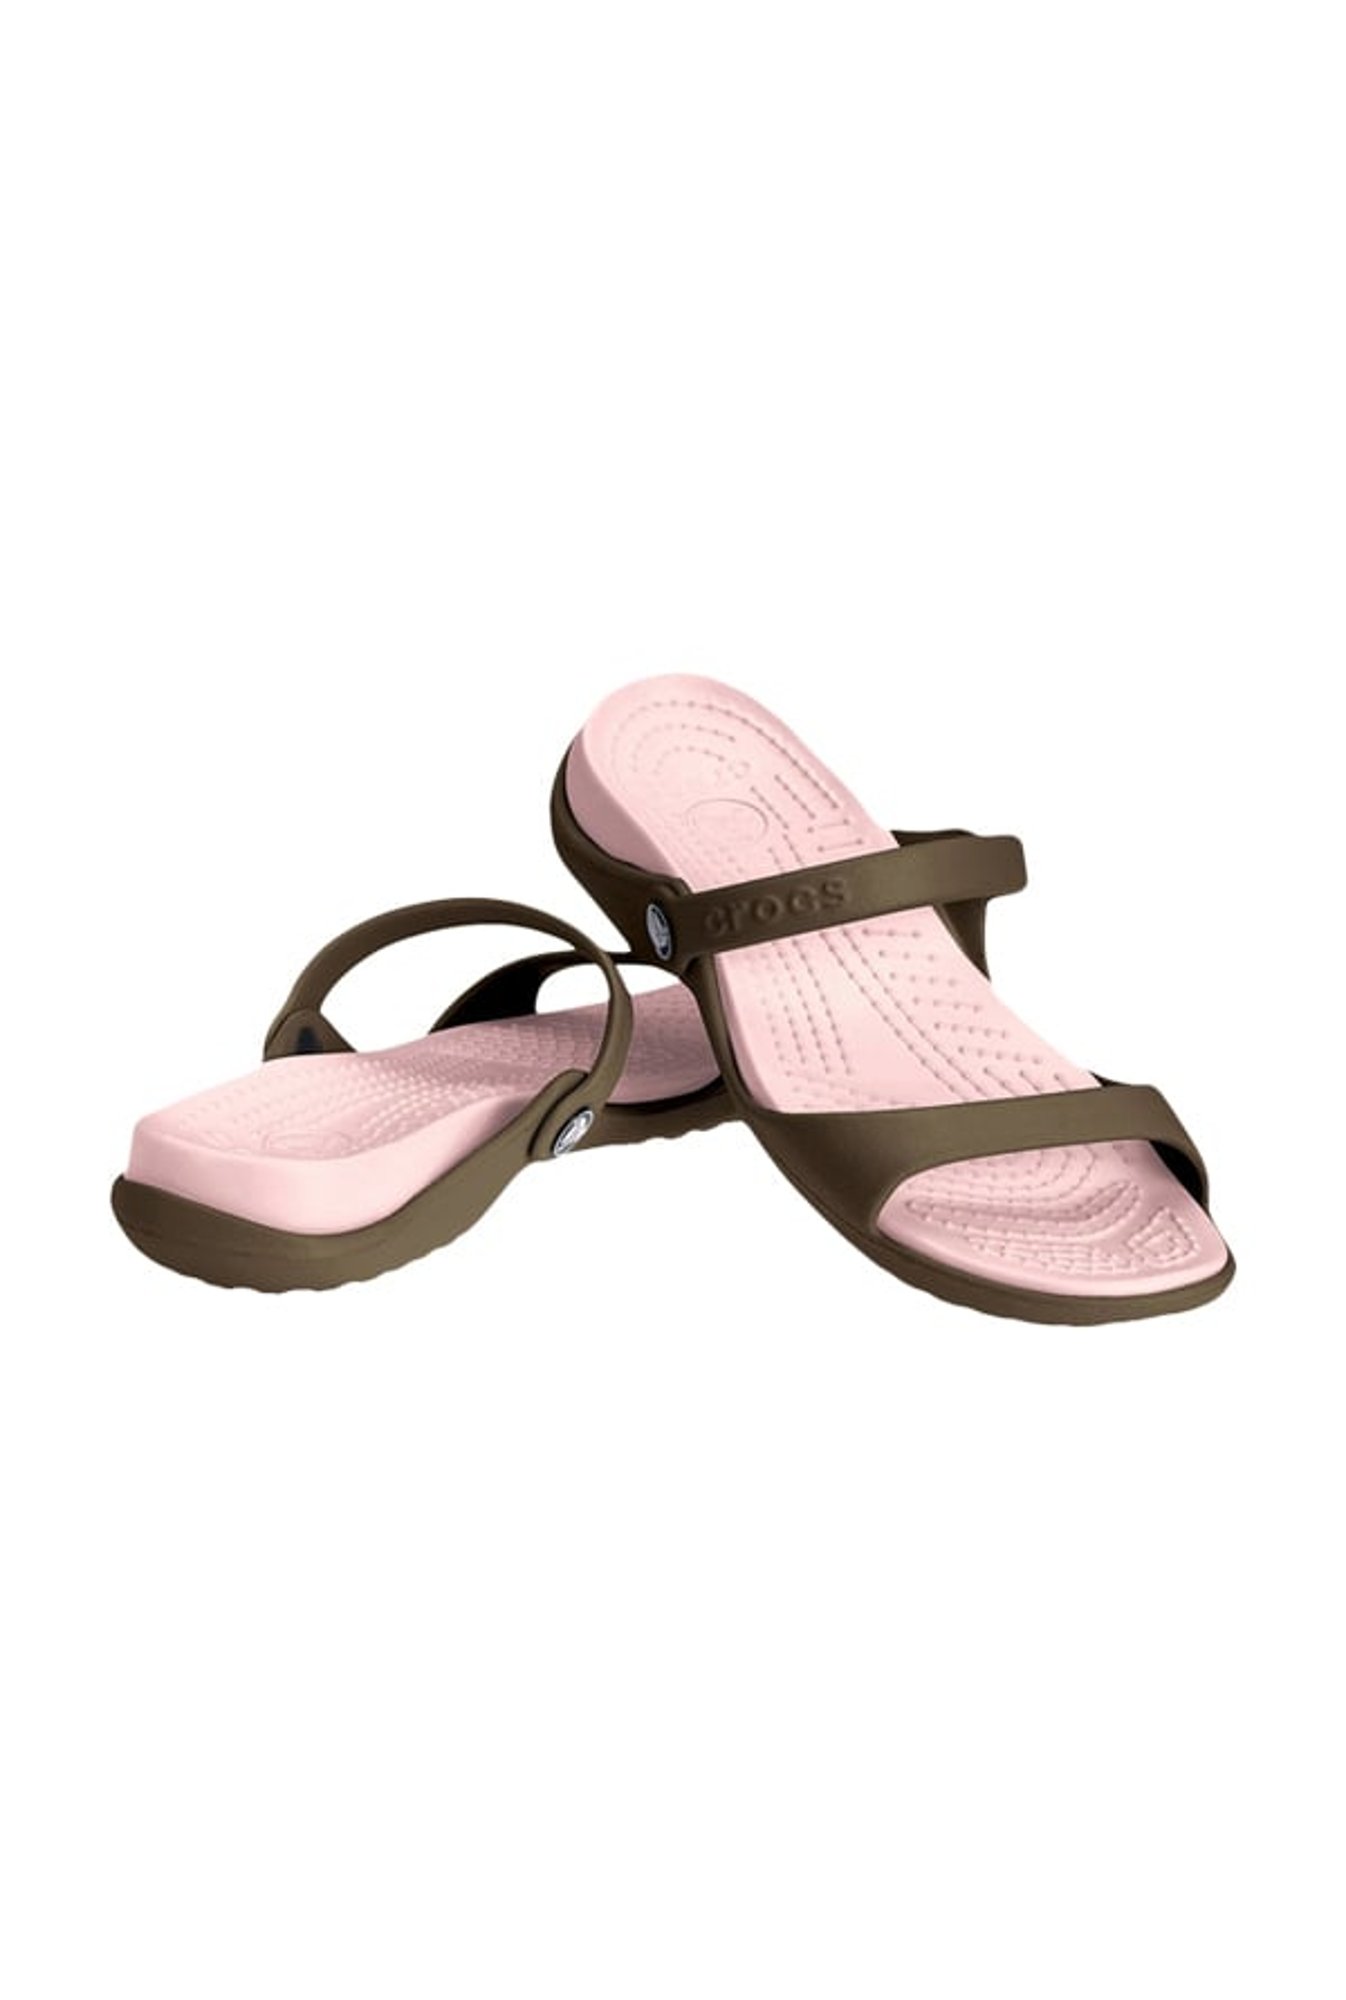 cleo sandals online